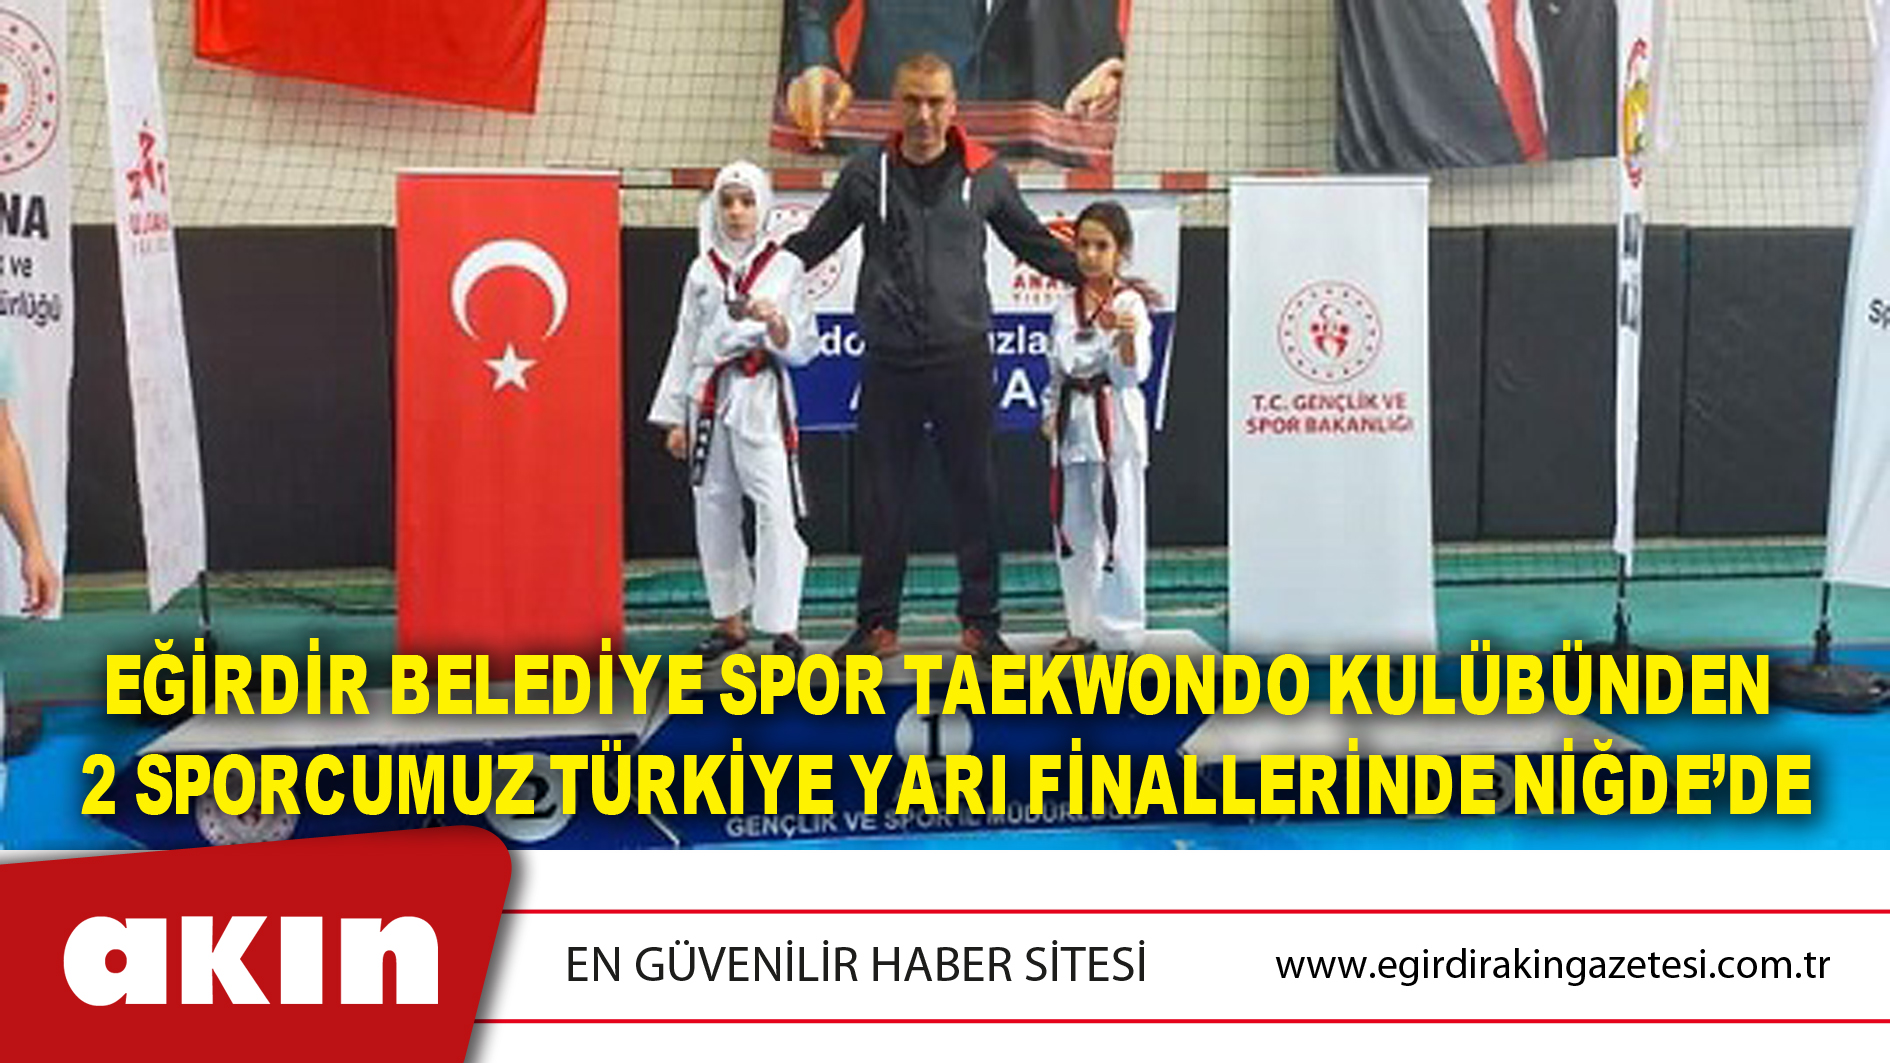 Eğirdir Belediye Spor Taekwondo Kulübünden 2 Sporcumuz Türkiye Yarı Finallerinde Niğde’de